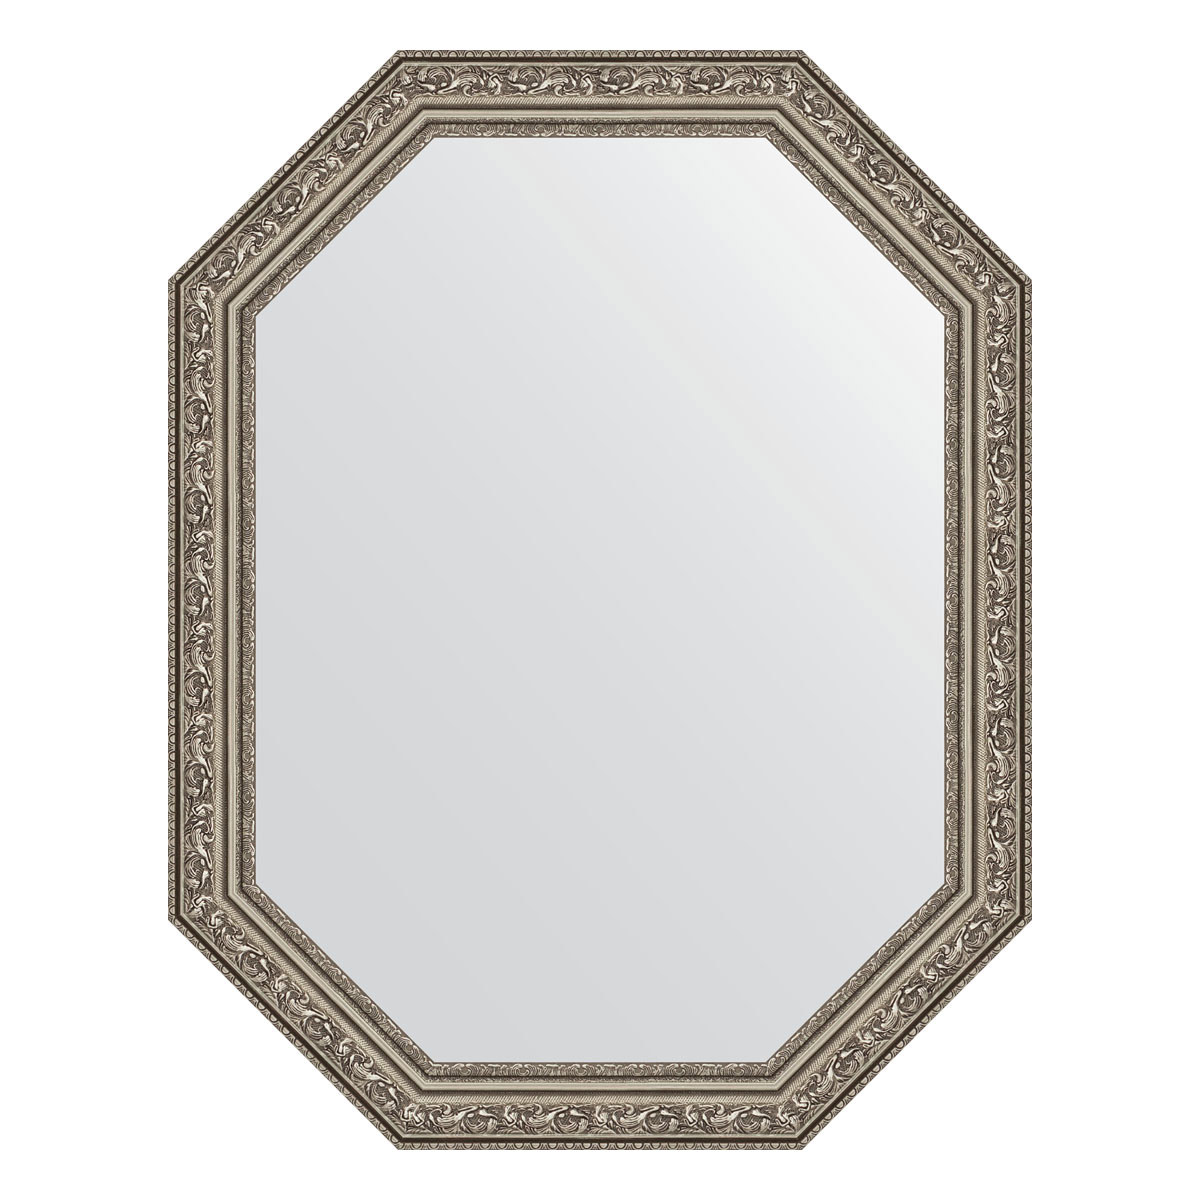 90313625 Зеркало в багетной раме виньетка состаренное серебро 56 мм 55x70 см BY 7026 POLYGON STLM-0180527 EVOFORM